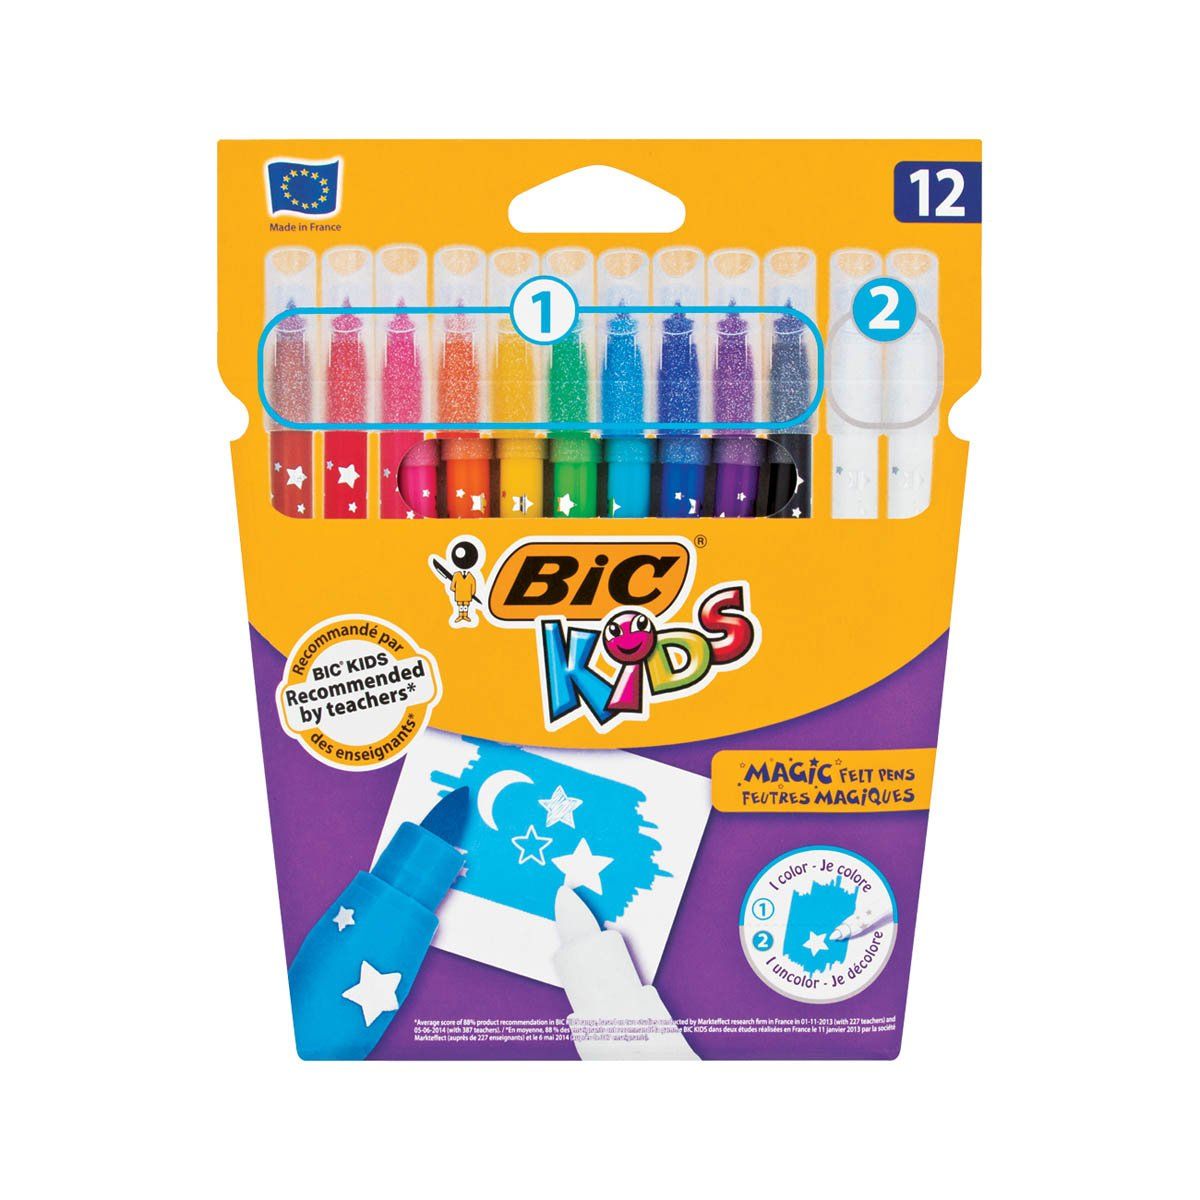 Bic Magic felt-tip pens 12 pcs